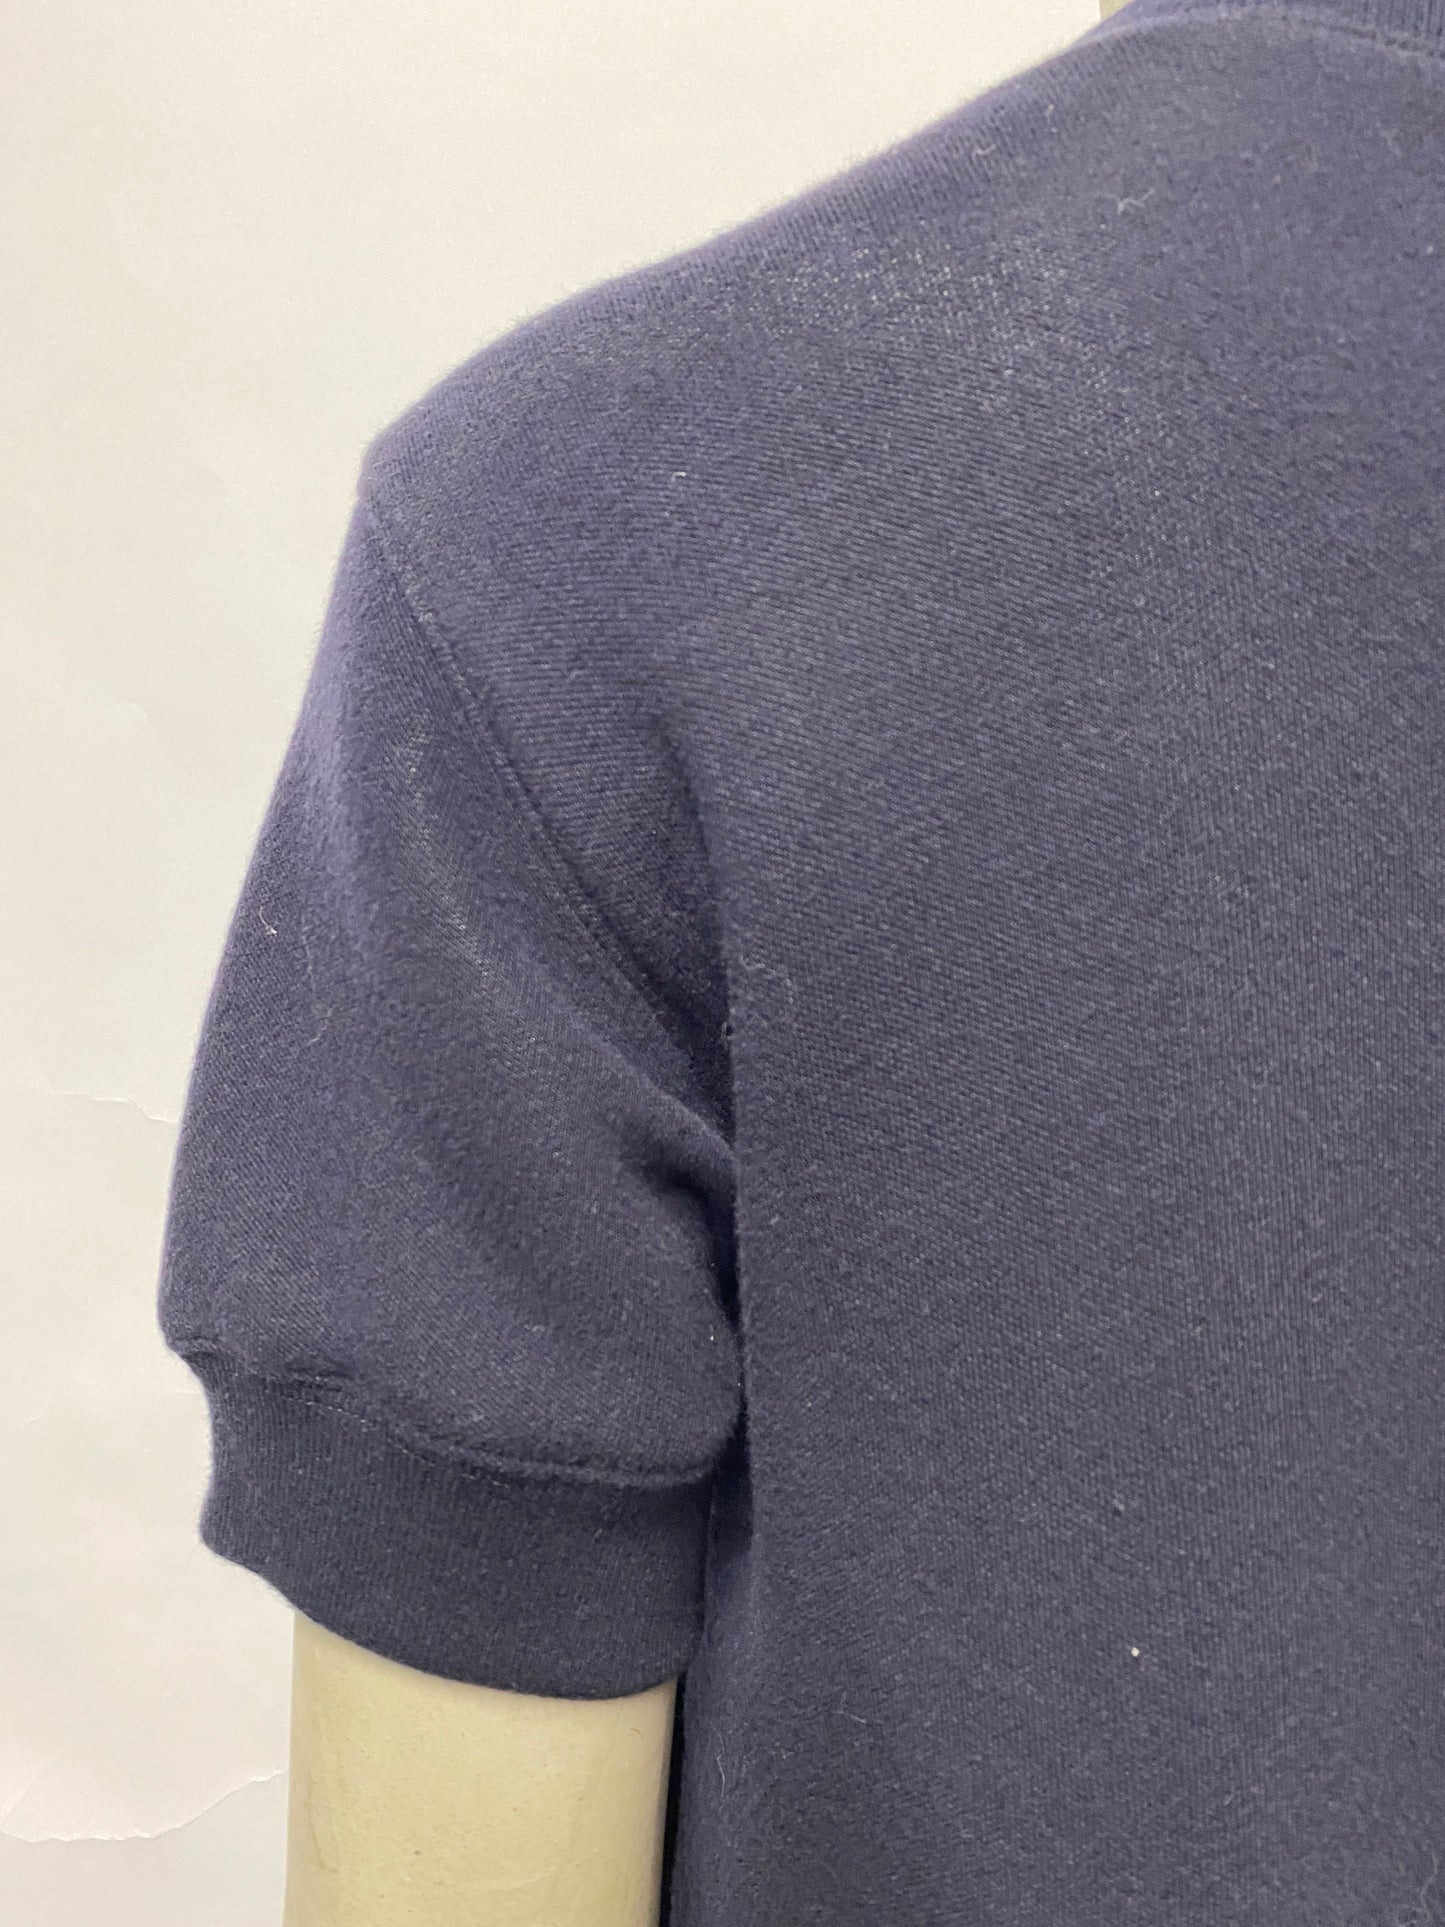 Sacai Navy Sweater Shirt Dress S/M